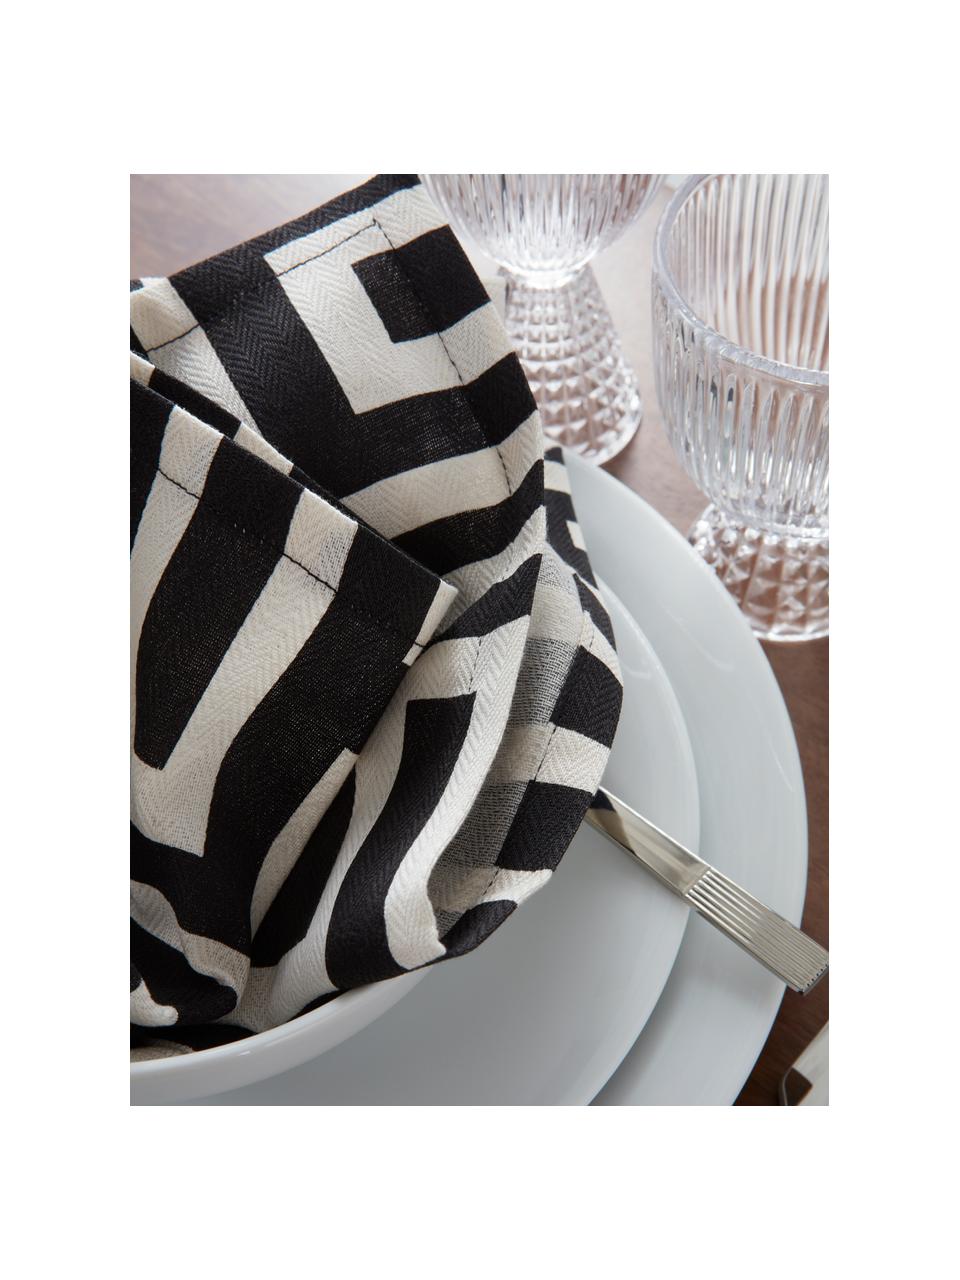 Serviettes imprimé blanc crème/noir Indy, 4 pièces, 92 % coton BCI (Better Cotton Initiative), 8 % lin, Noir, blanc crème, larg. 42 x long. 42 cm